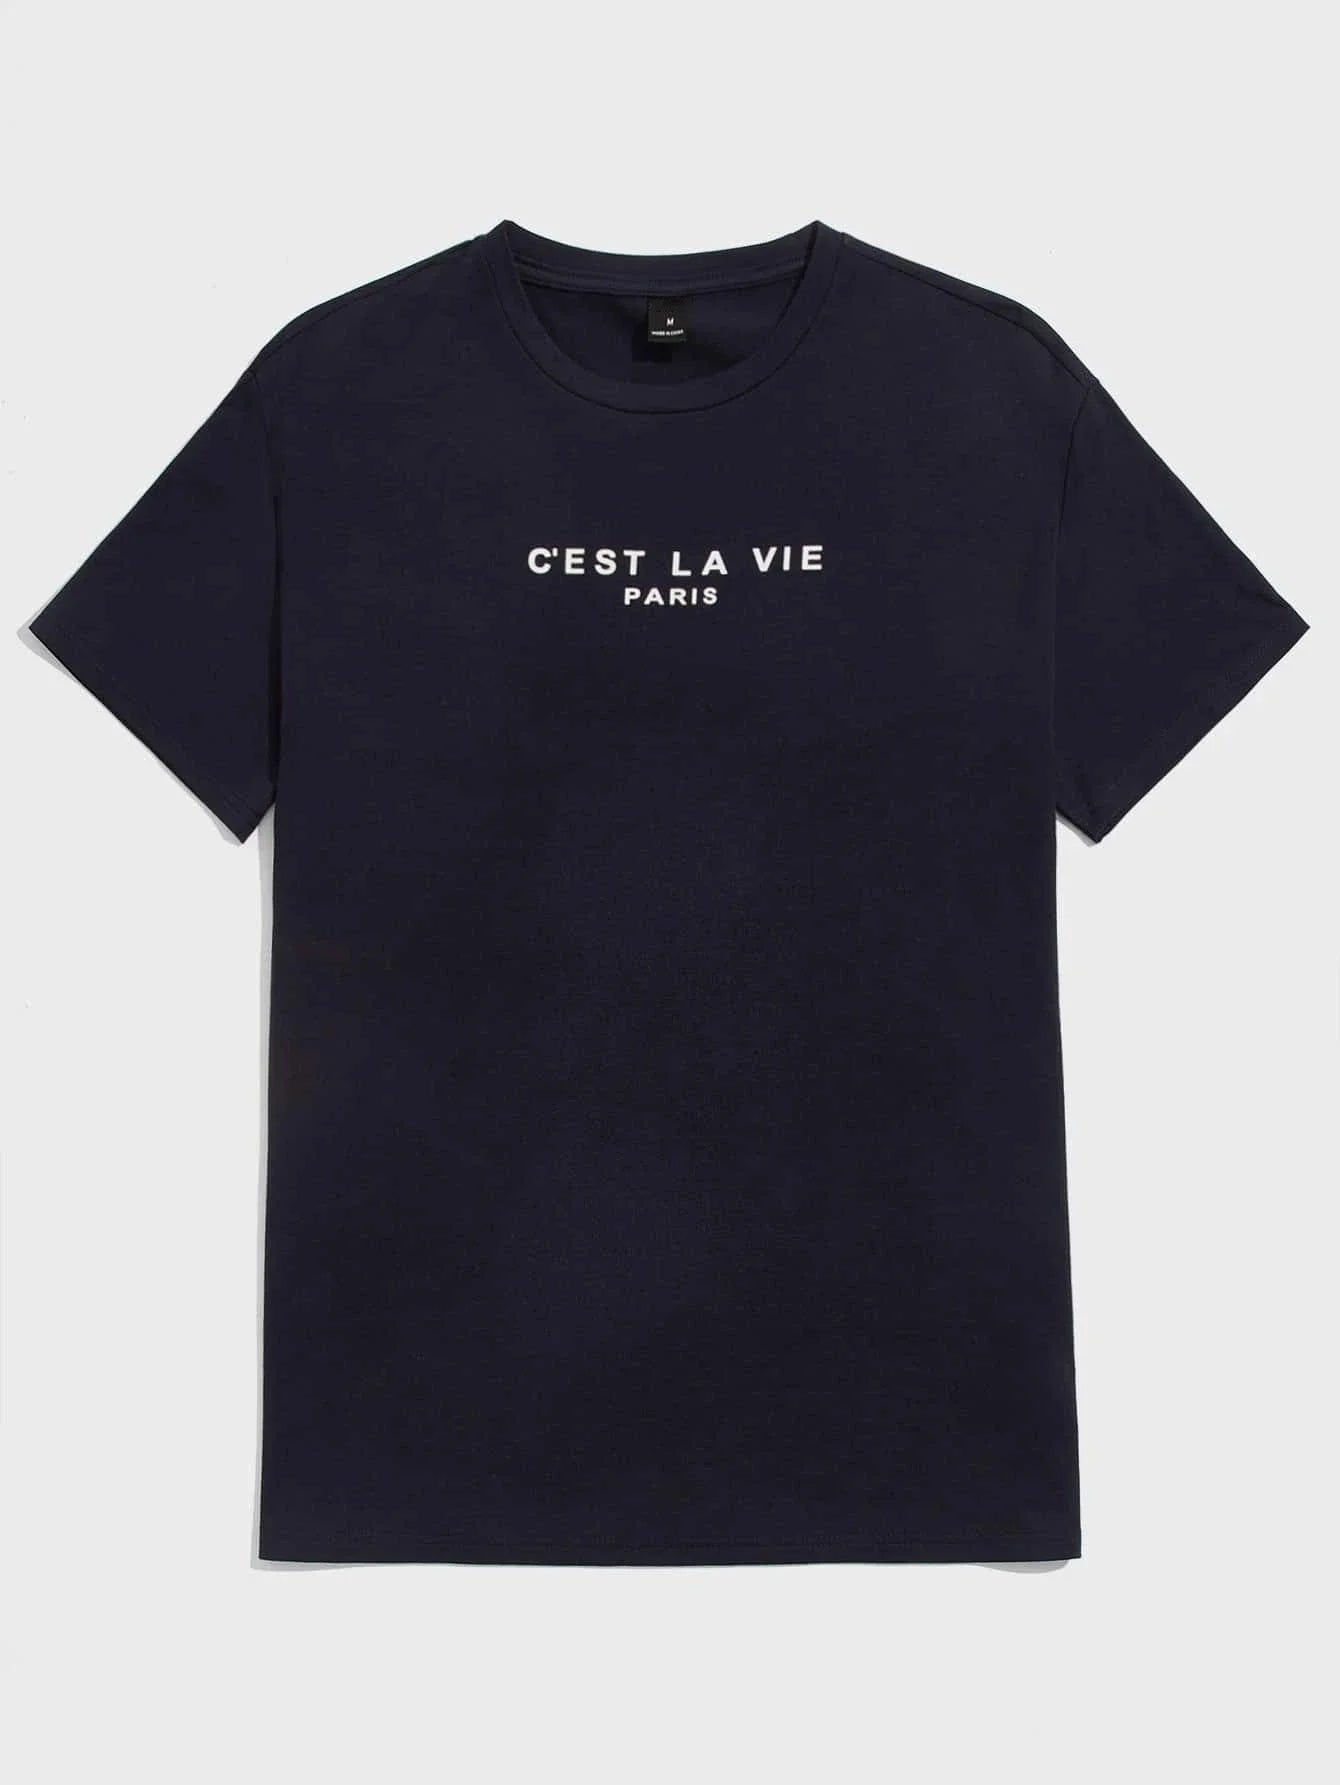 C'Est La Vie Paris T-Shirt